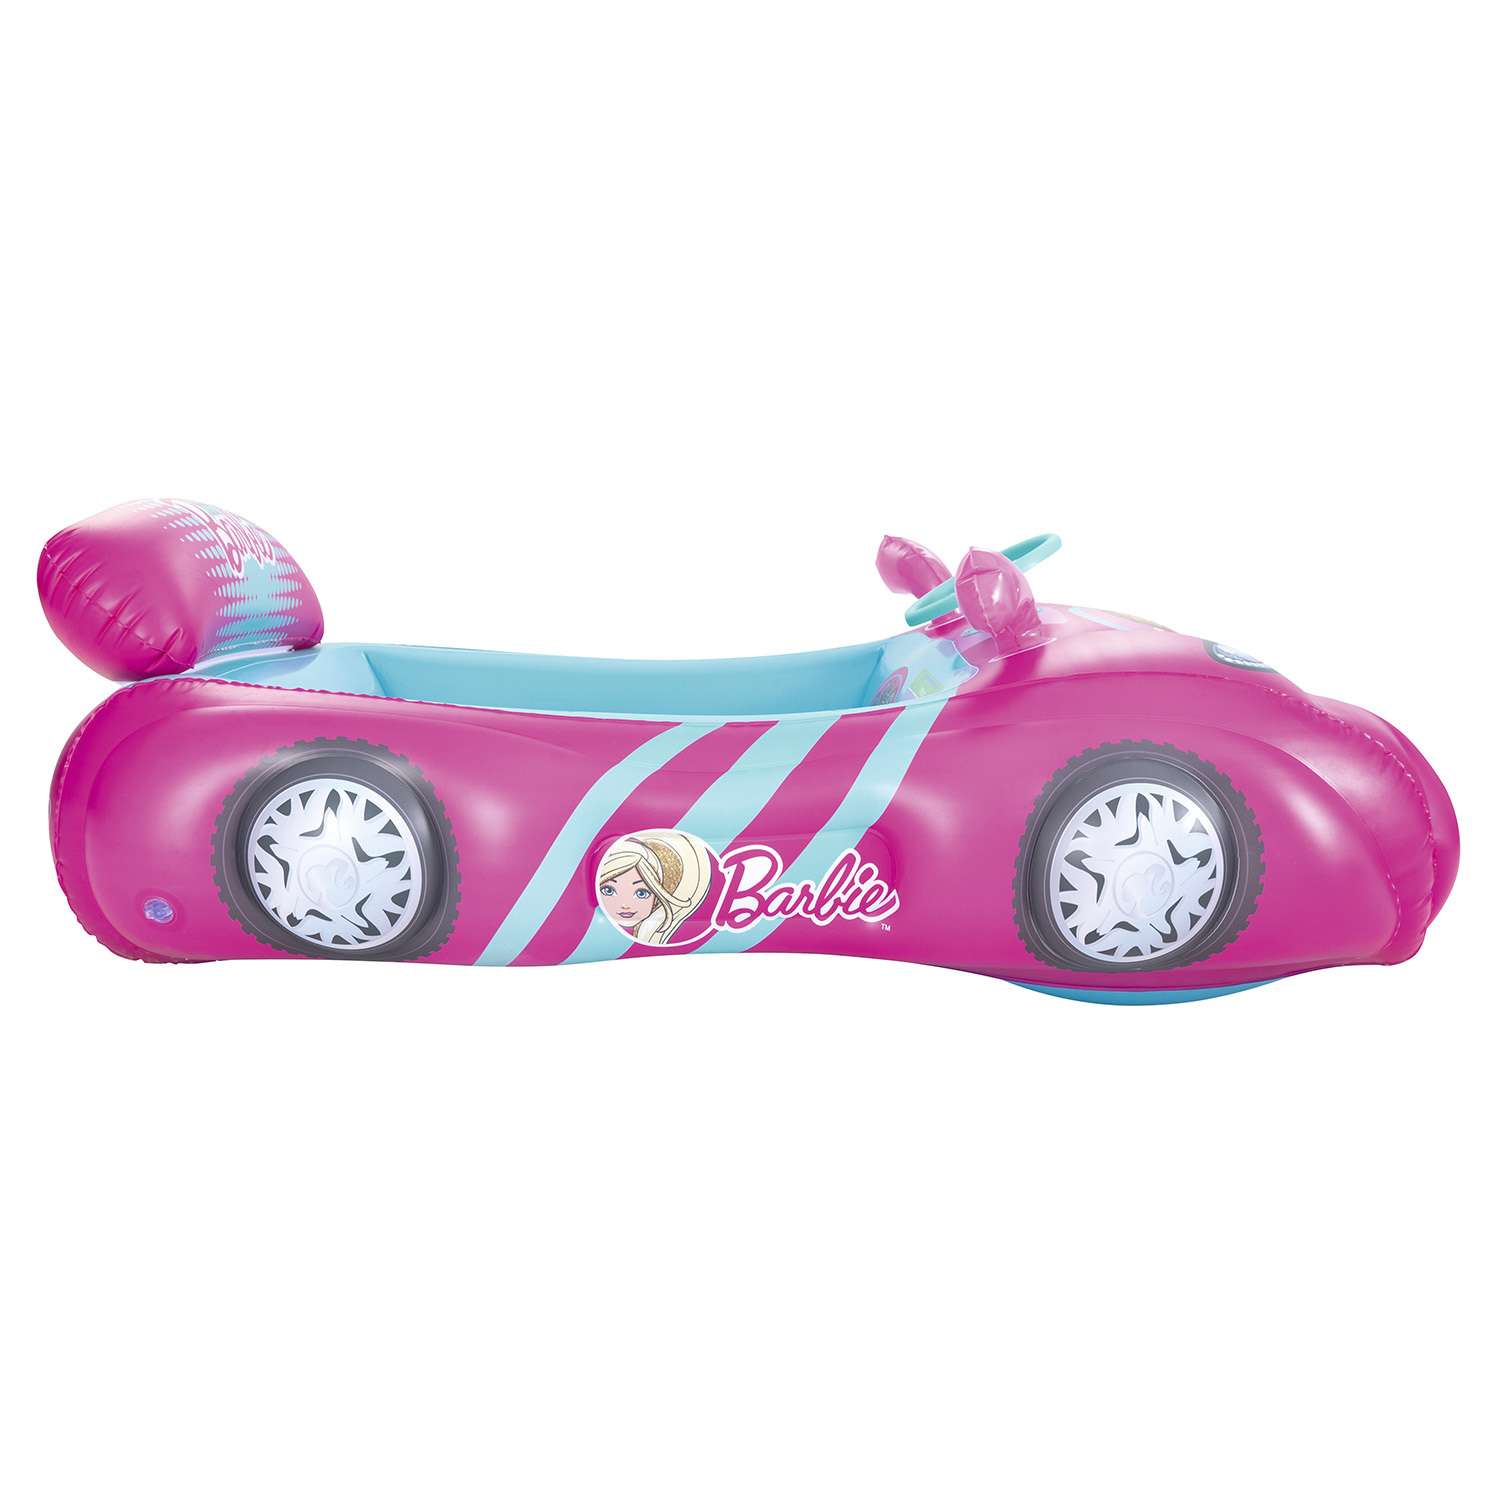 Центр игровой Bestway Barbie Машина с шариками 93207 - фото 7